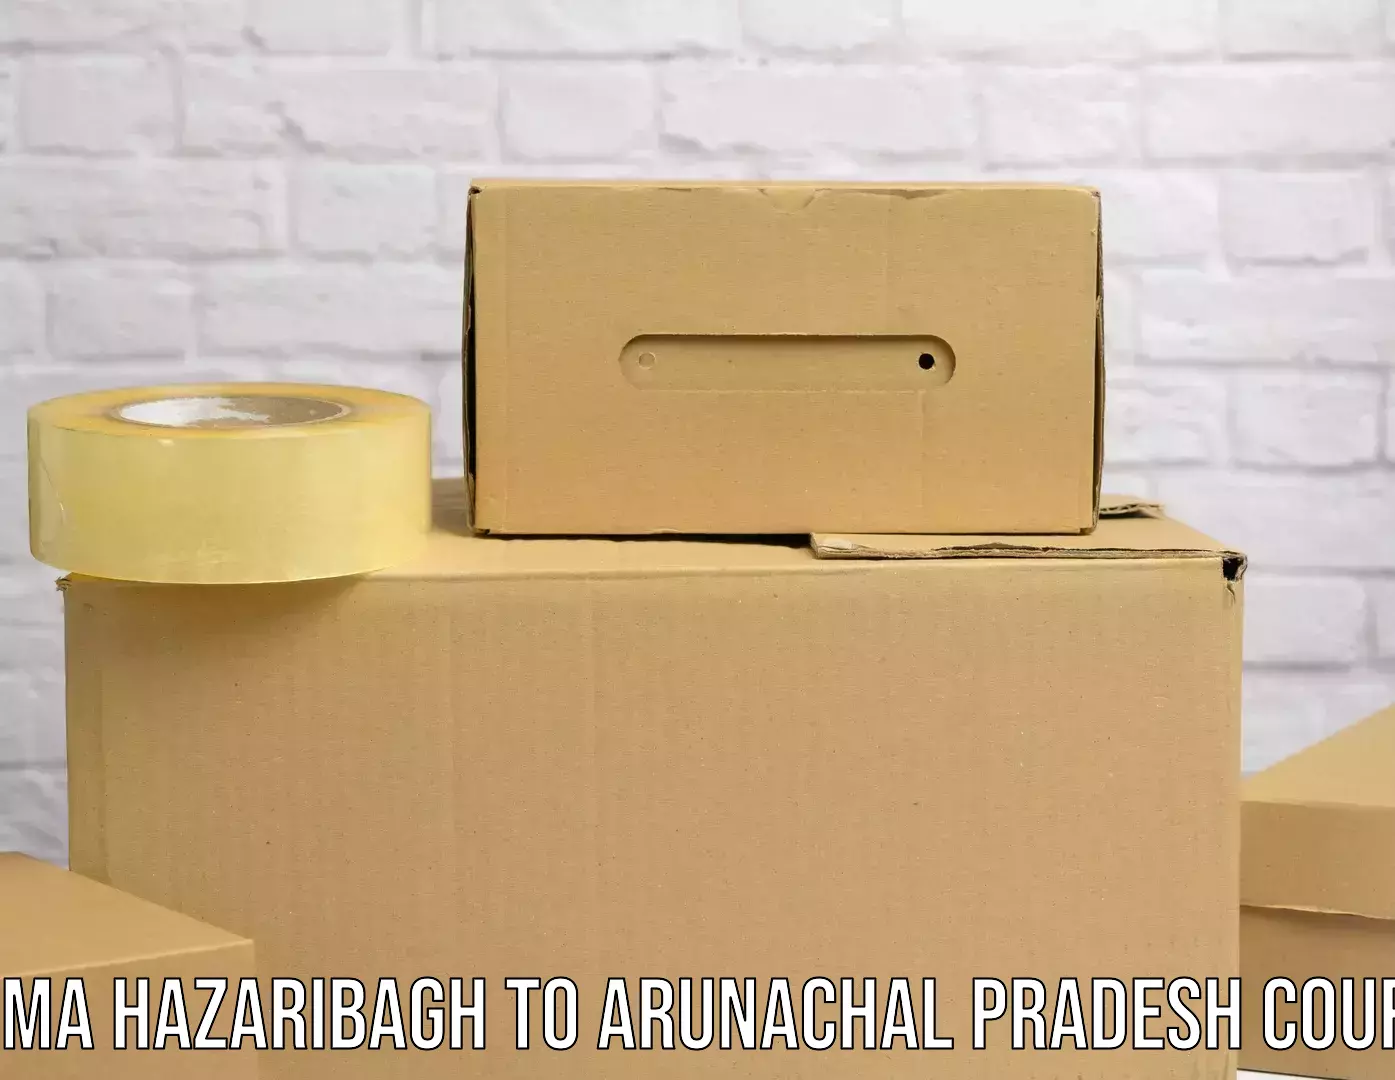 Global delivery options in Padma Hazaribagh to Arunachal Pradesh